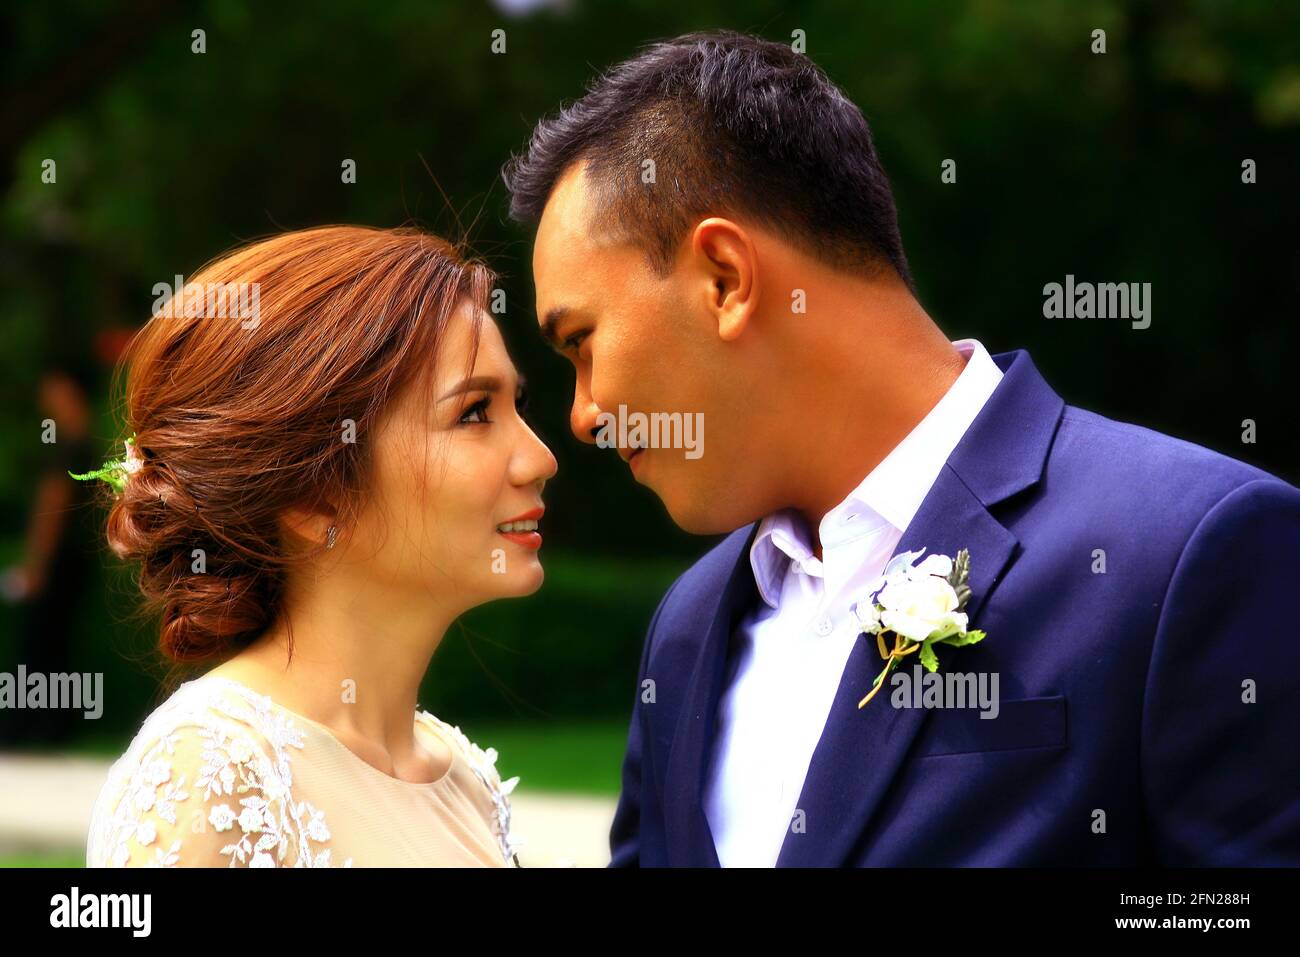 Junges verleibtes thailändisches Paar heiratet in Thailandia Foto Stock